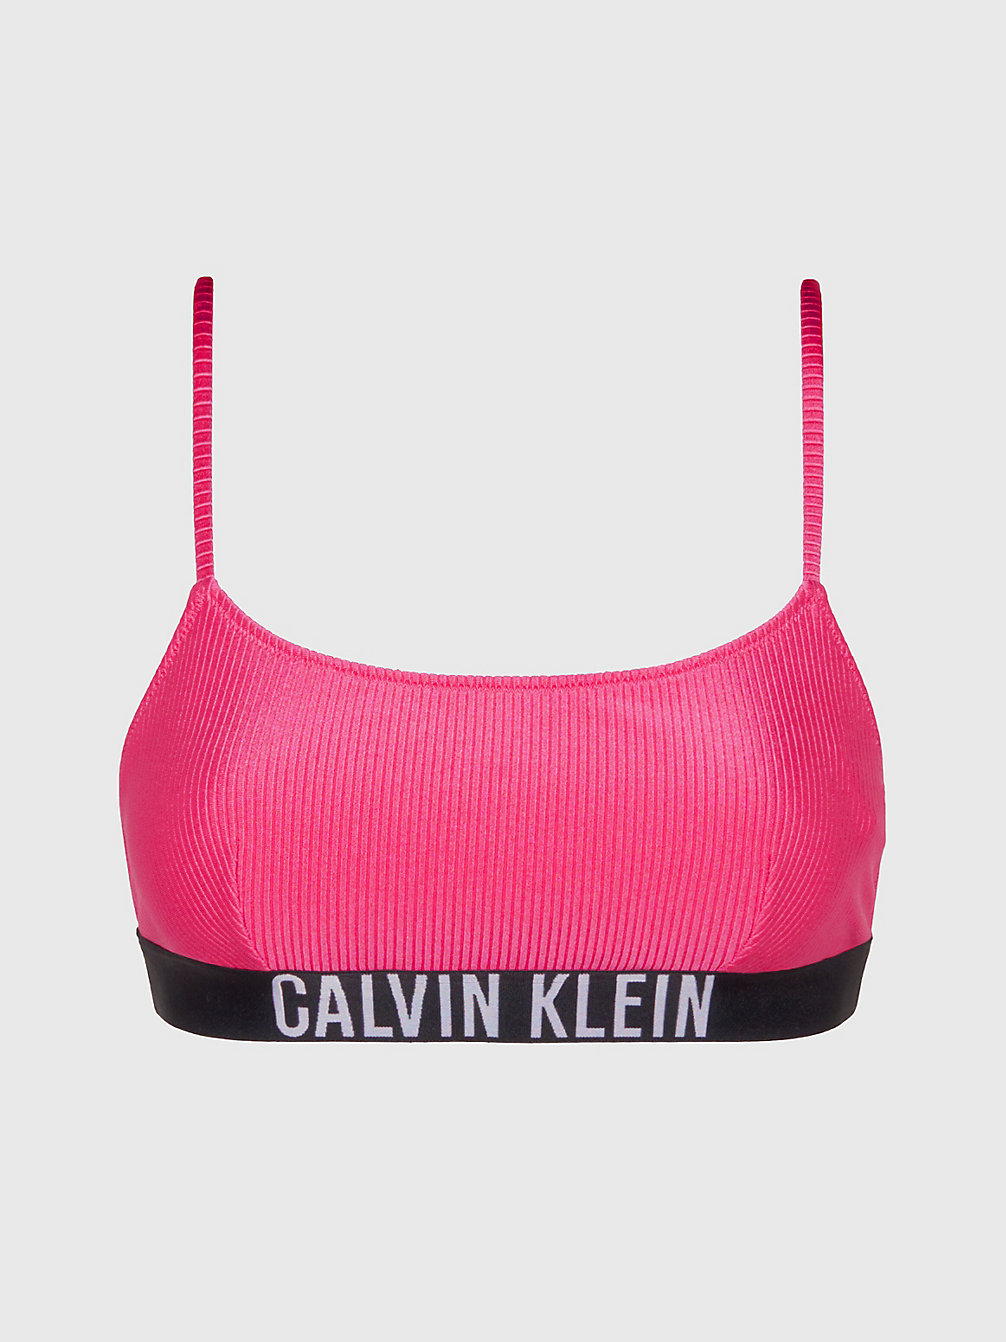 PINK FLASH Bralette Bikinitop - Intense Power undefined dames Calvin Klein